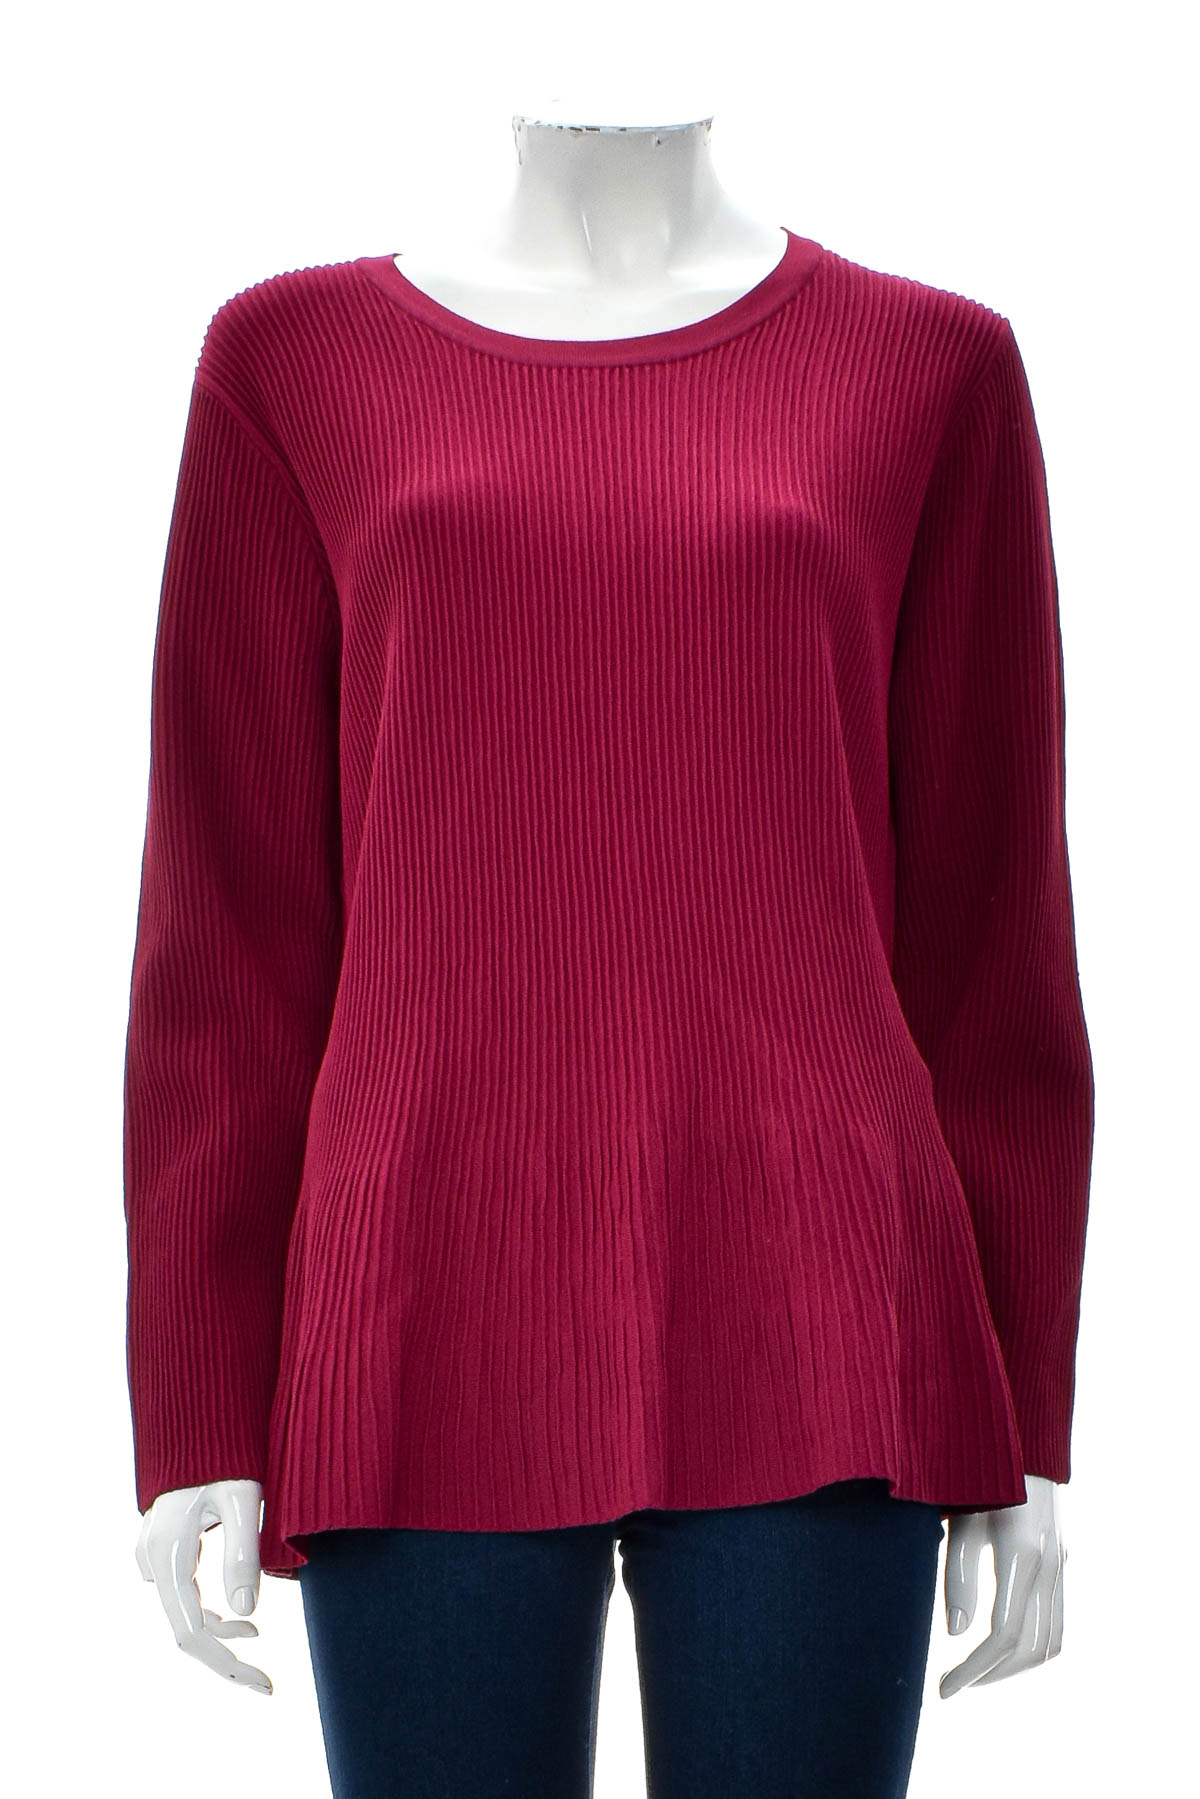 Women's sweater - Heine - 0